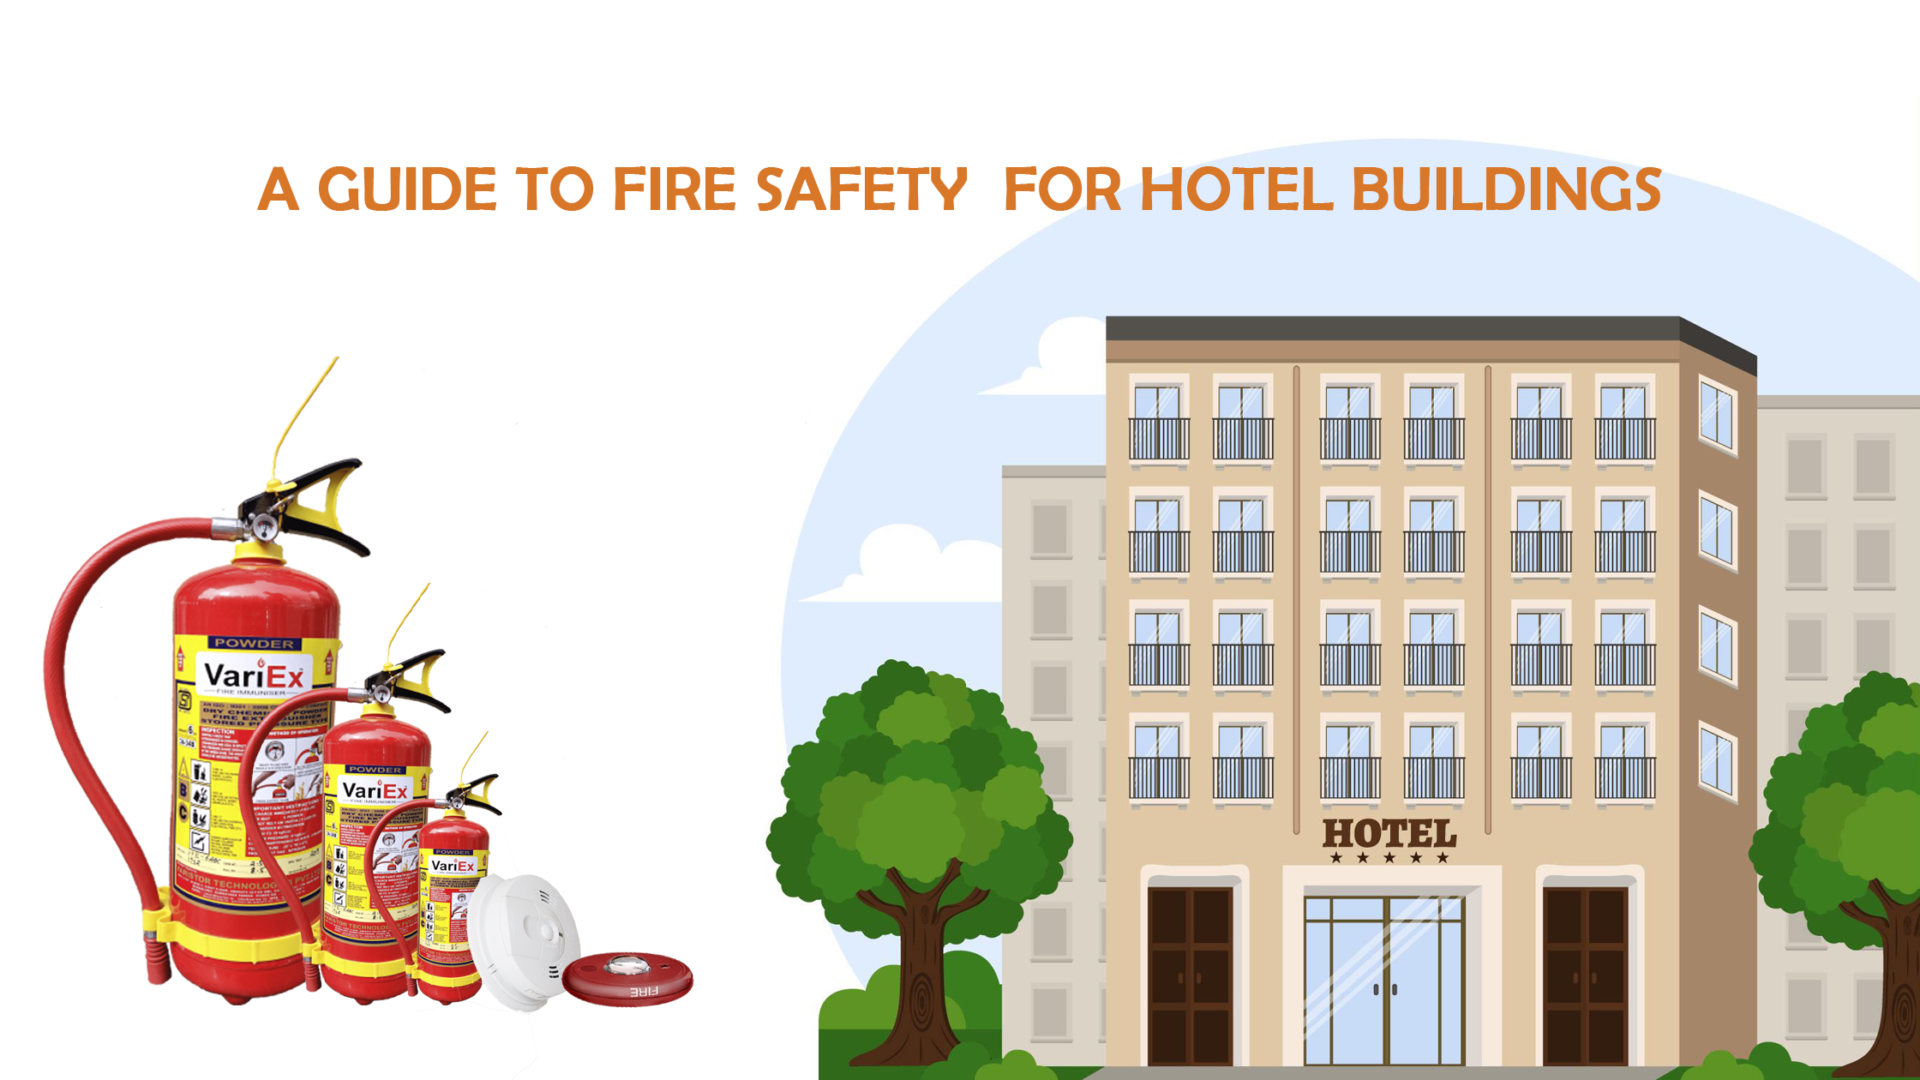 Guía de seguridad contra incendios para edificios de hoteles - Seguridad contra incendios en hoteles 4